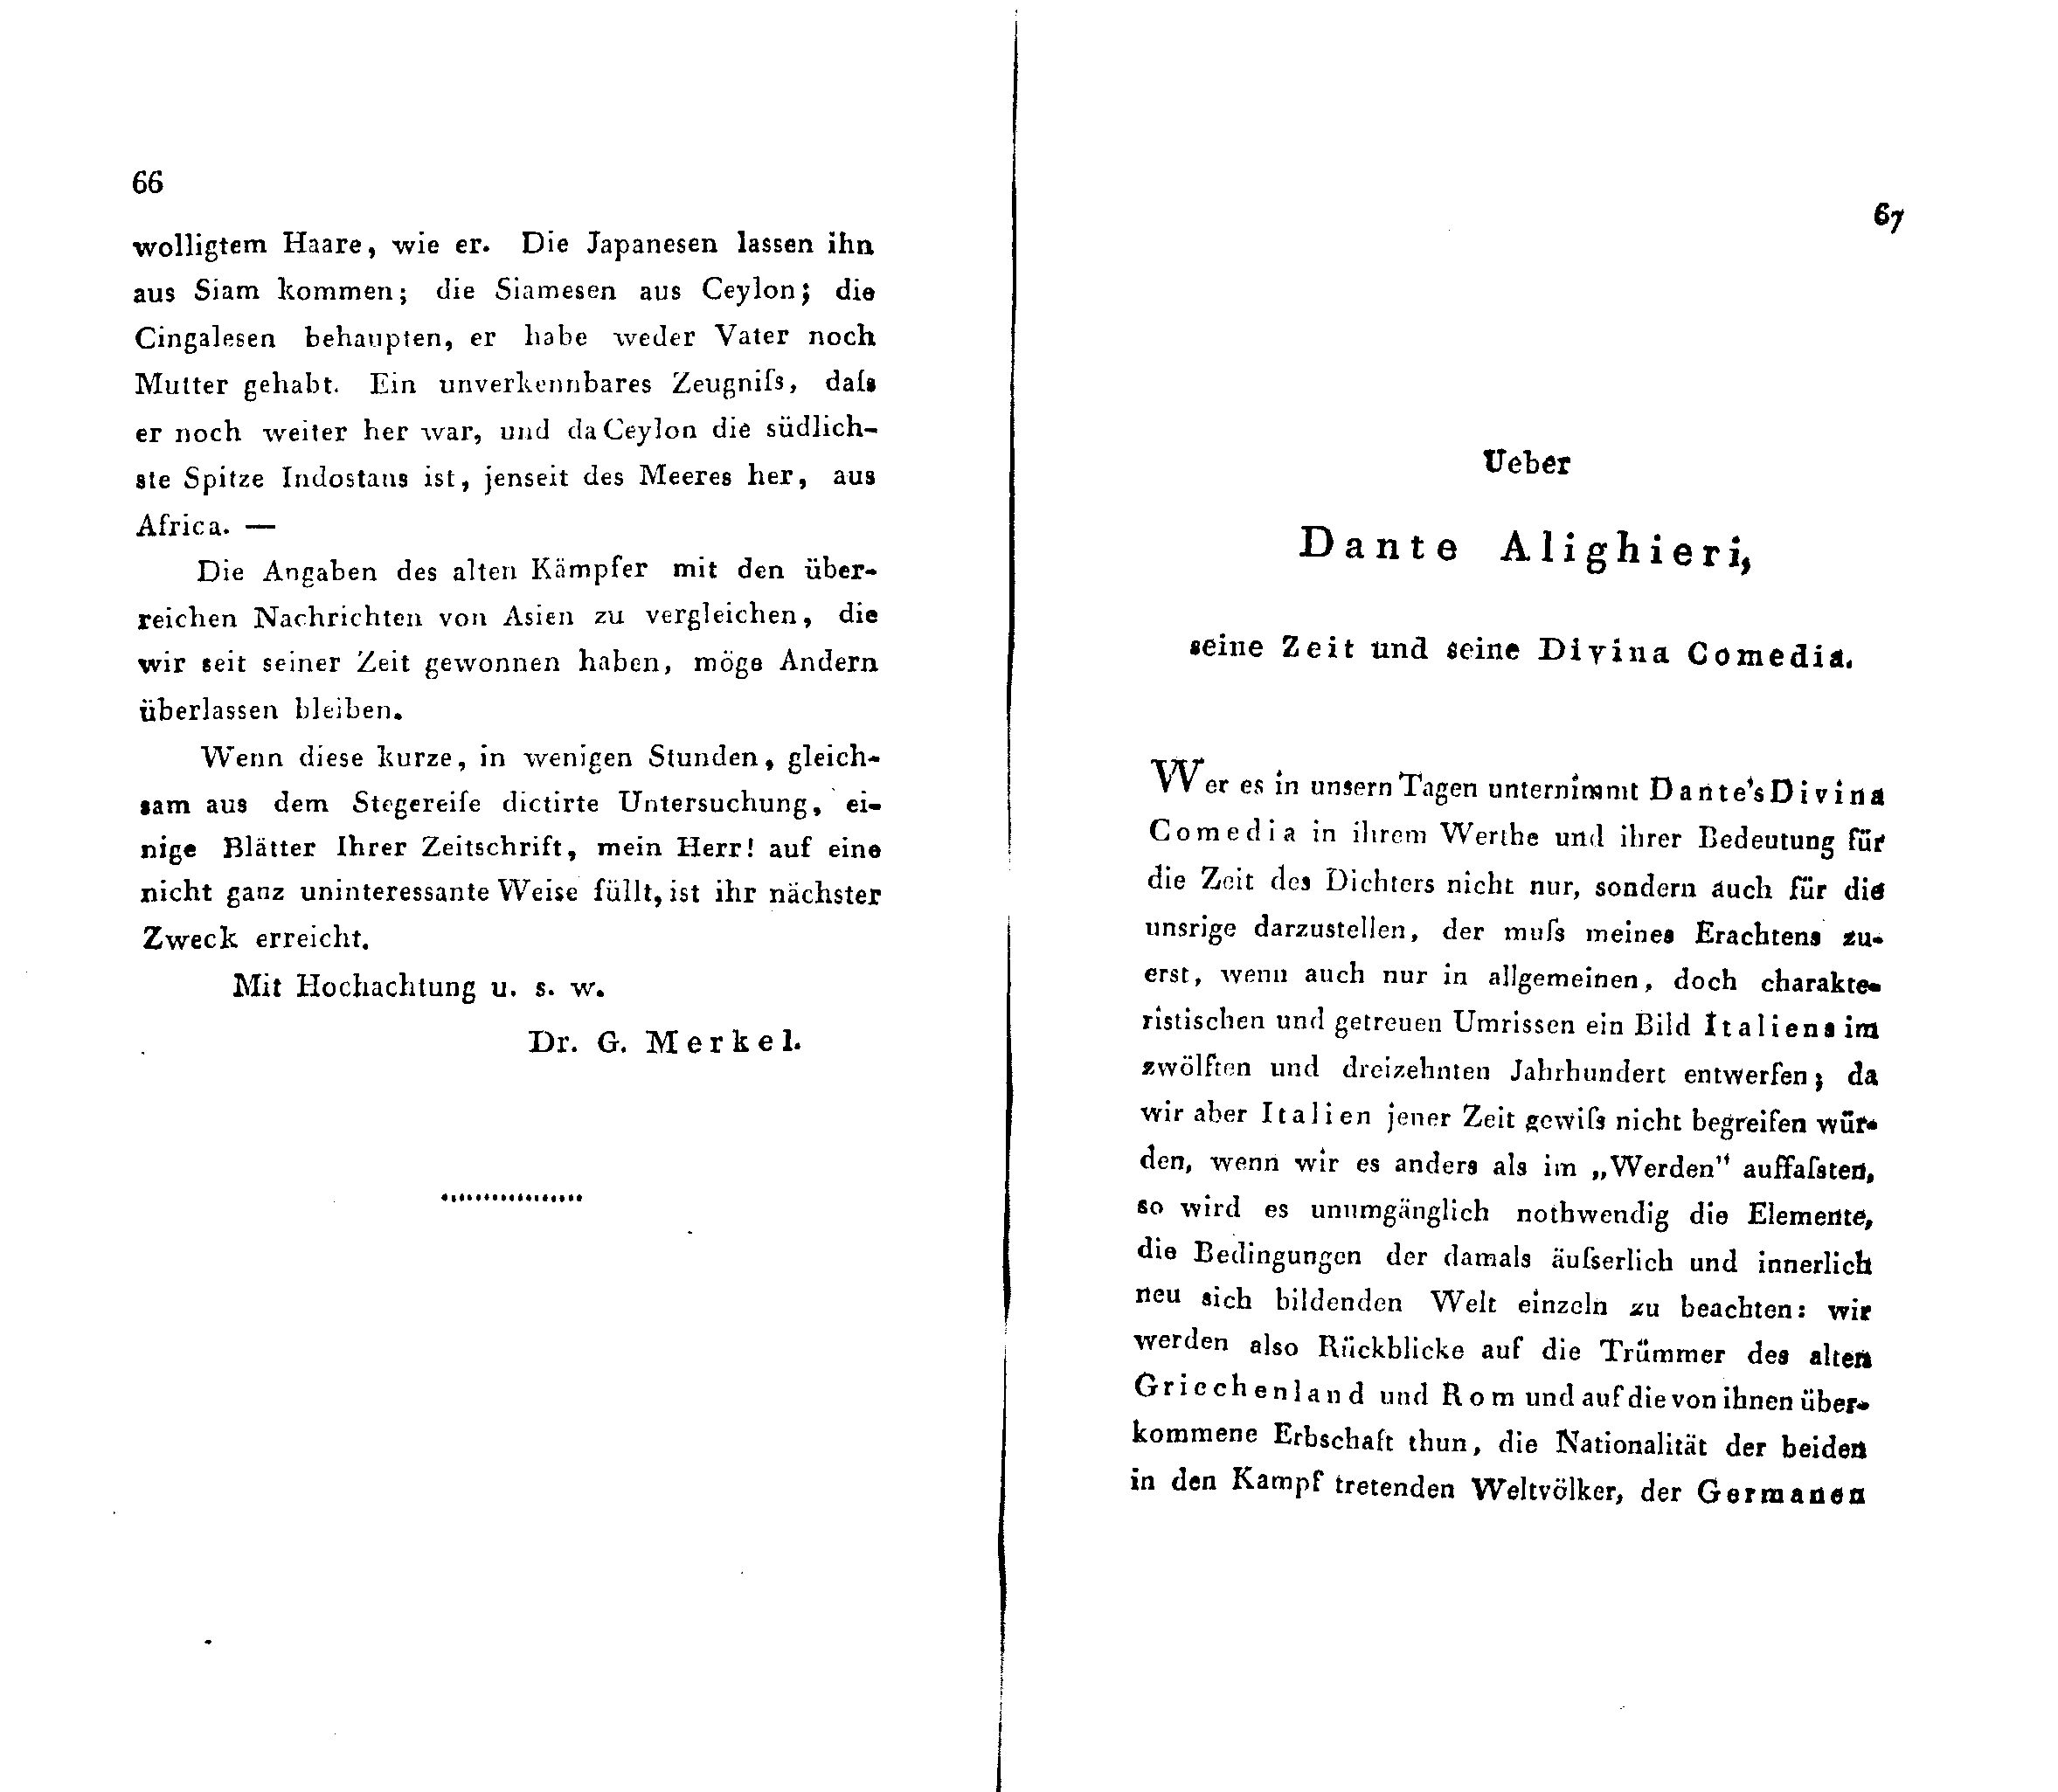 Ueber Dante Alighieri, seine Zeit und seine Divina Comedia (1824 – 1825) | 1. (66-67) Основной текст